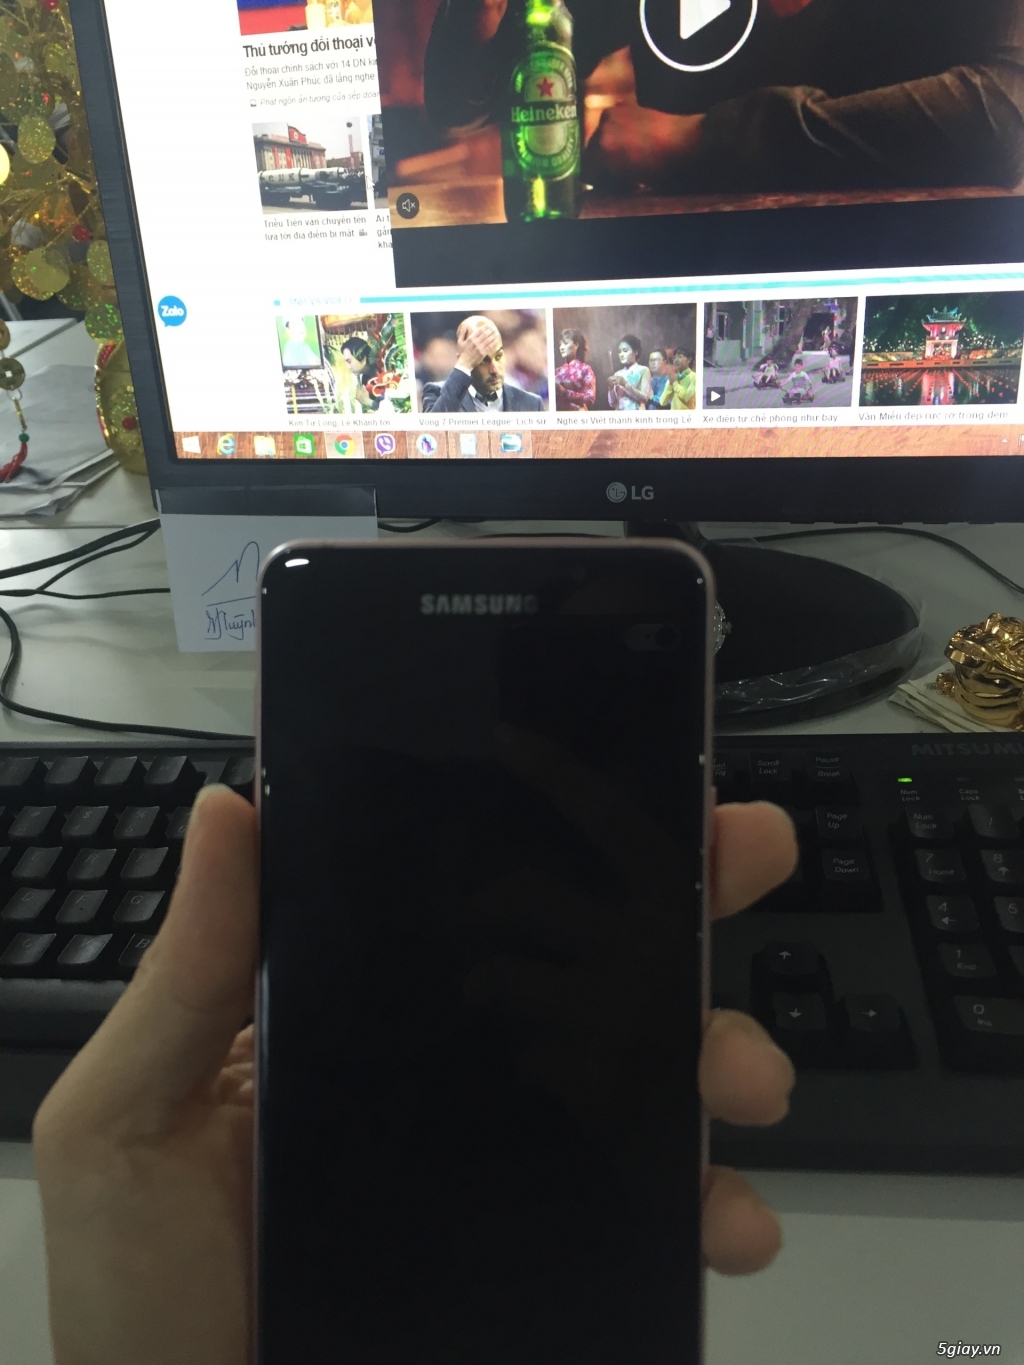 Samsung A7 2016 Rose Gold. 3 tr 8 ra đi nhanh chóng - 3